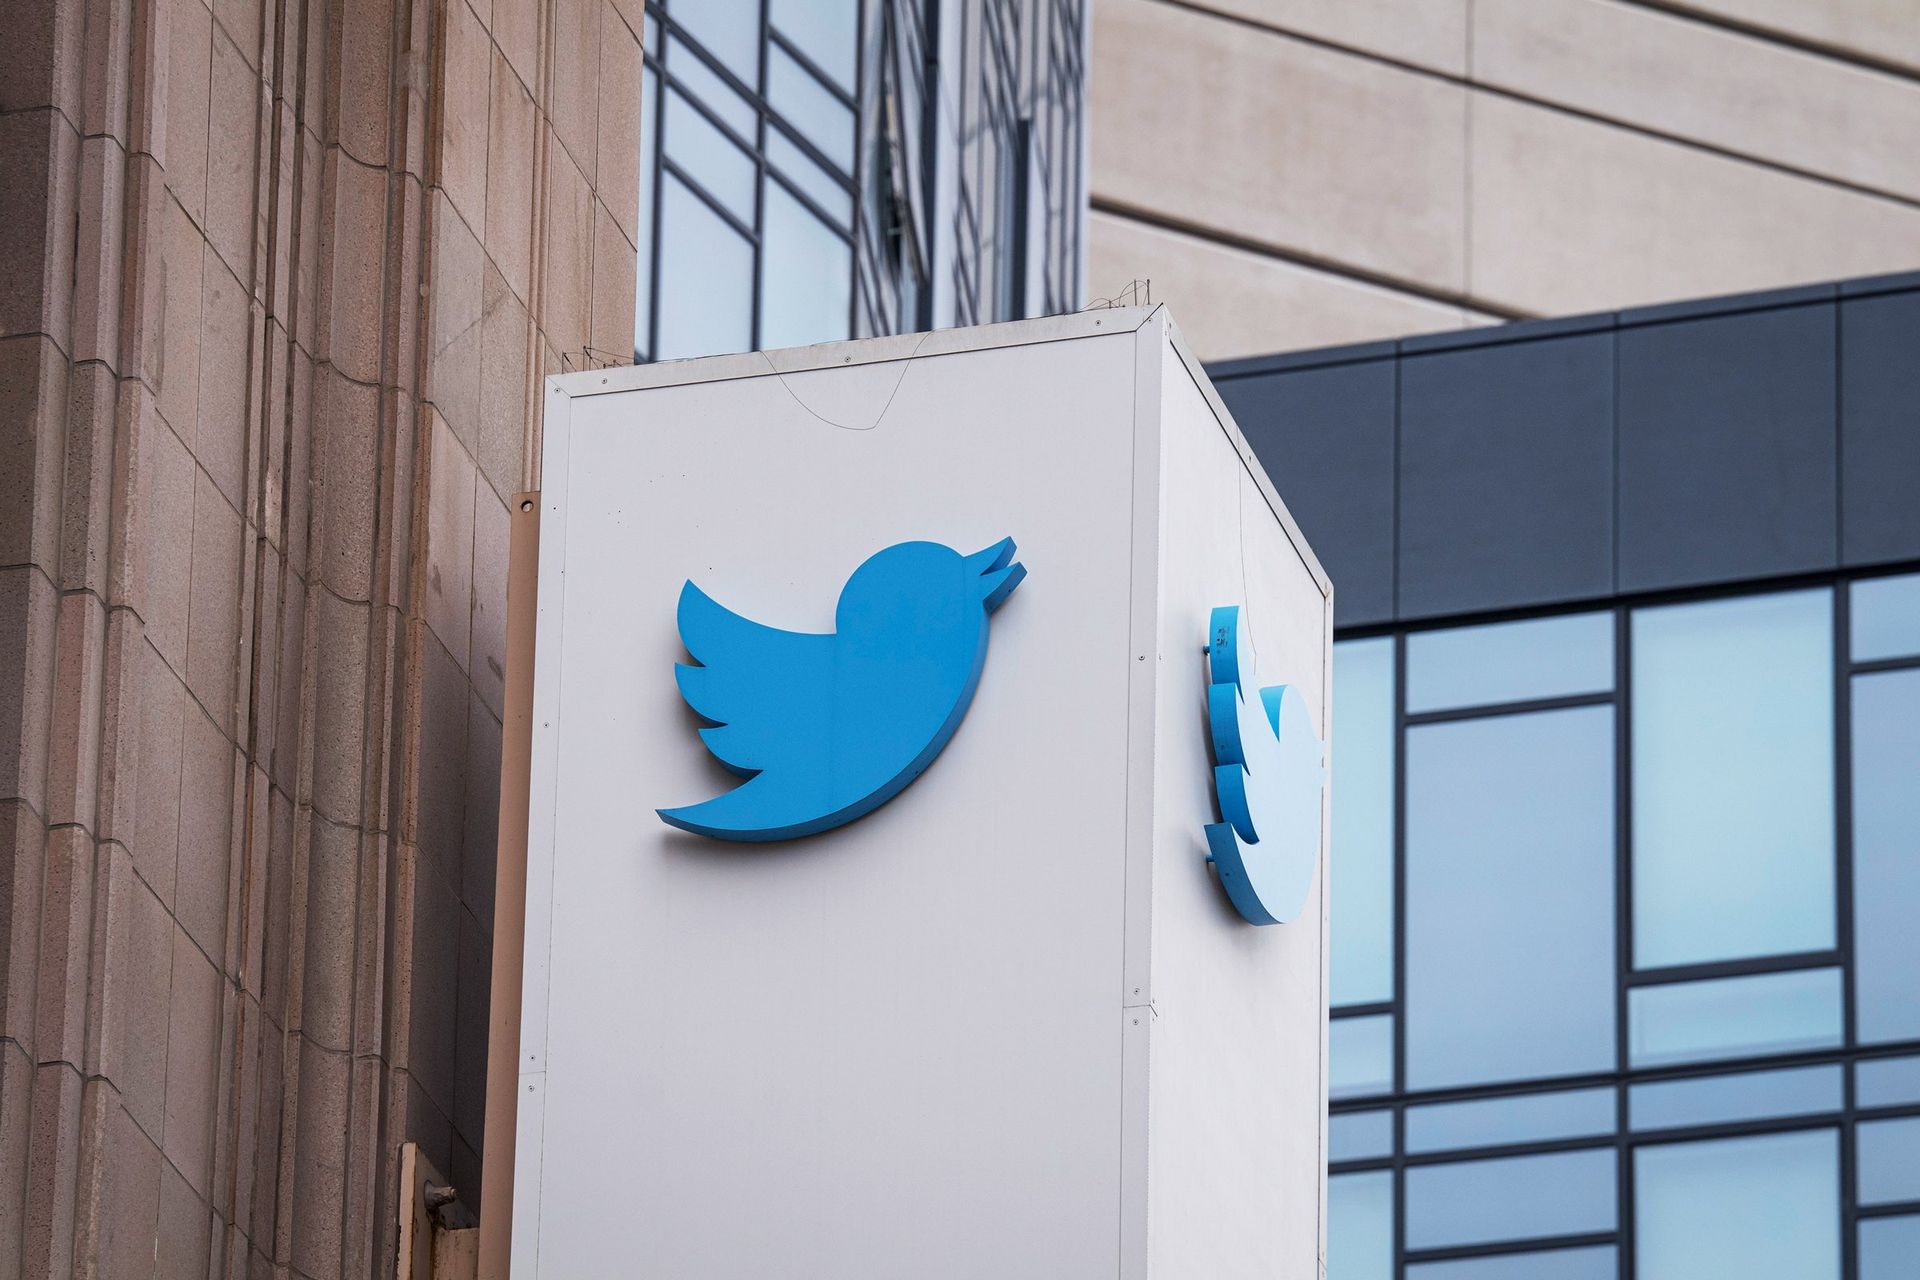 Lotta al trono su Twitter: il CEO licenzia 2 dirigenti, interrompe le assunzioni